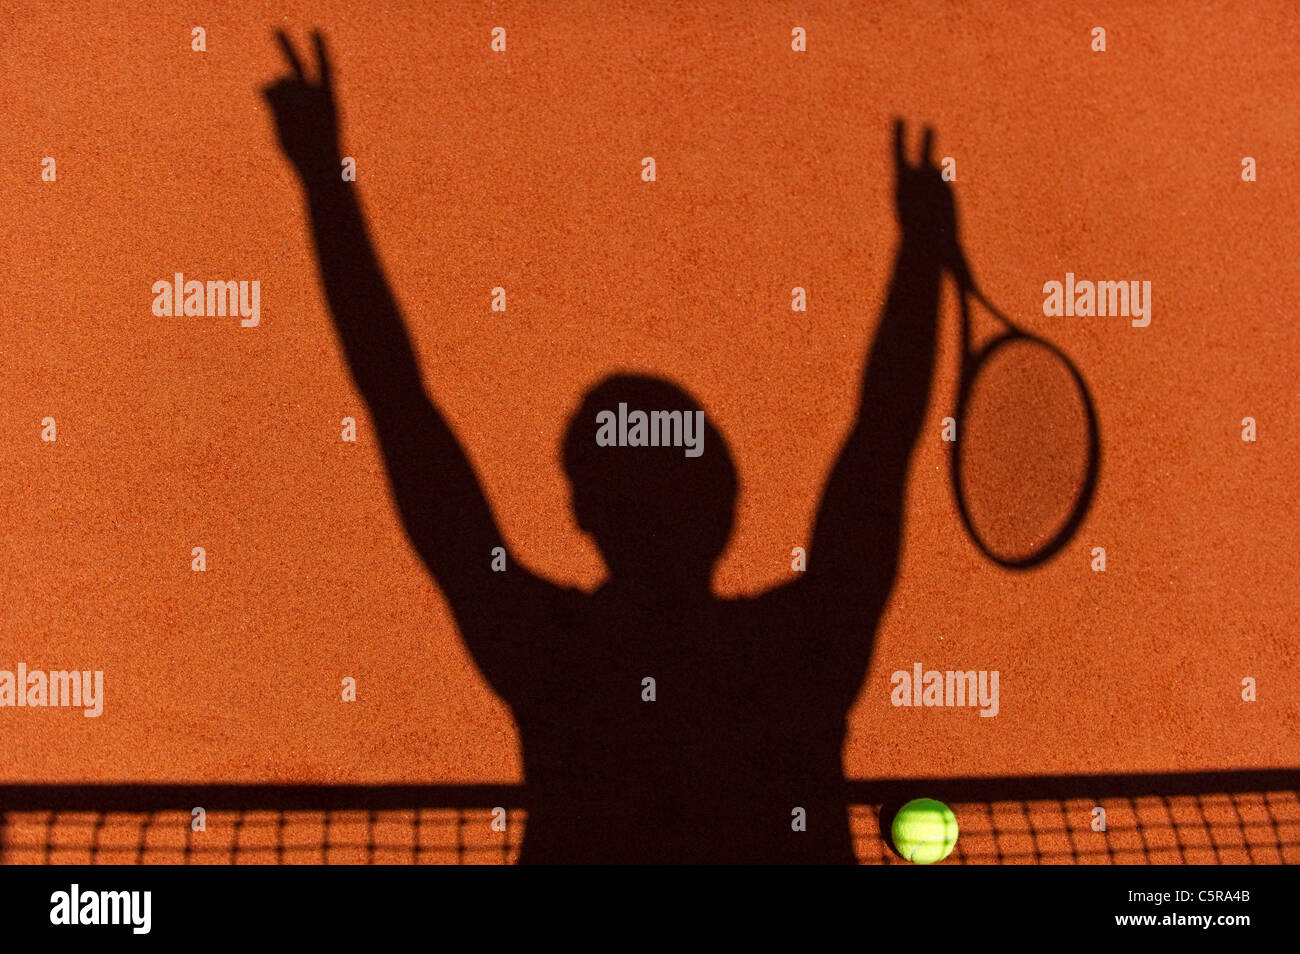 Eine Tennis-Spieler-Silhouette am Netz feiert Sieg mit Tennisball auf Platz. Stockfoto